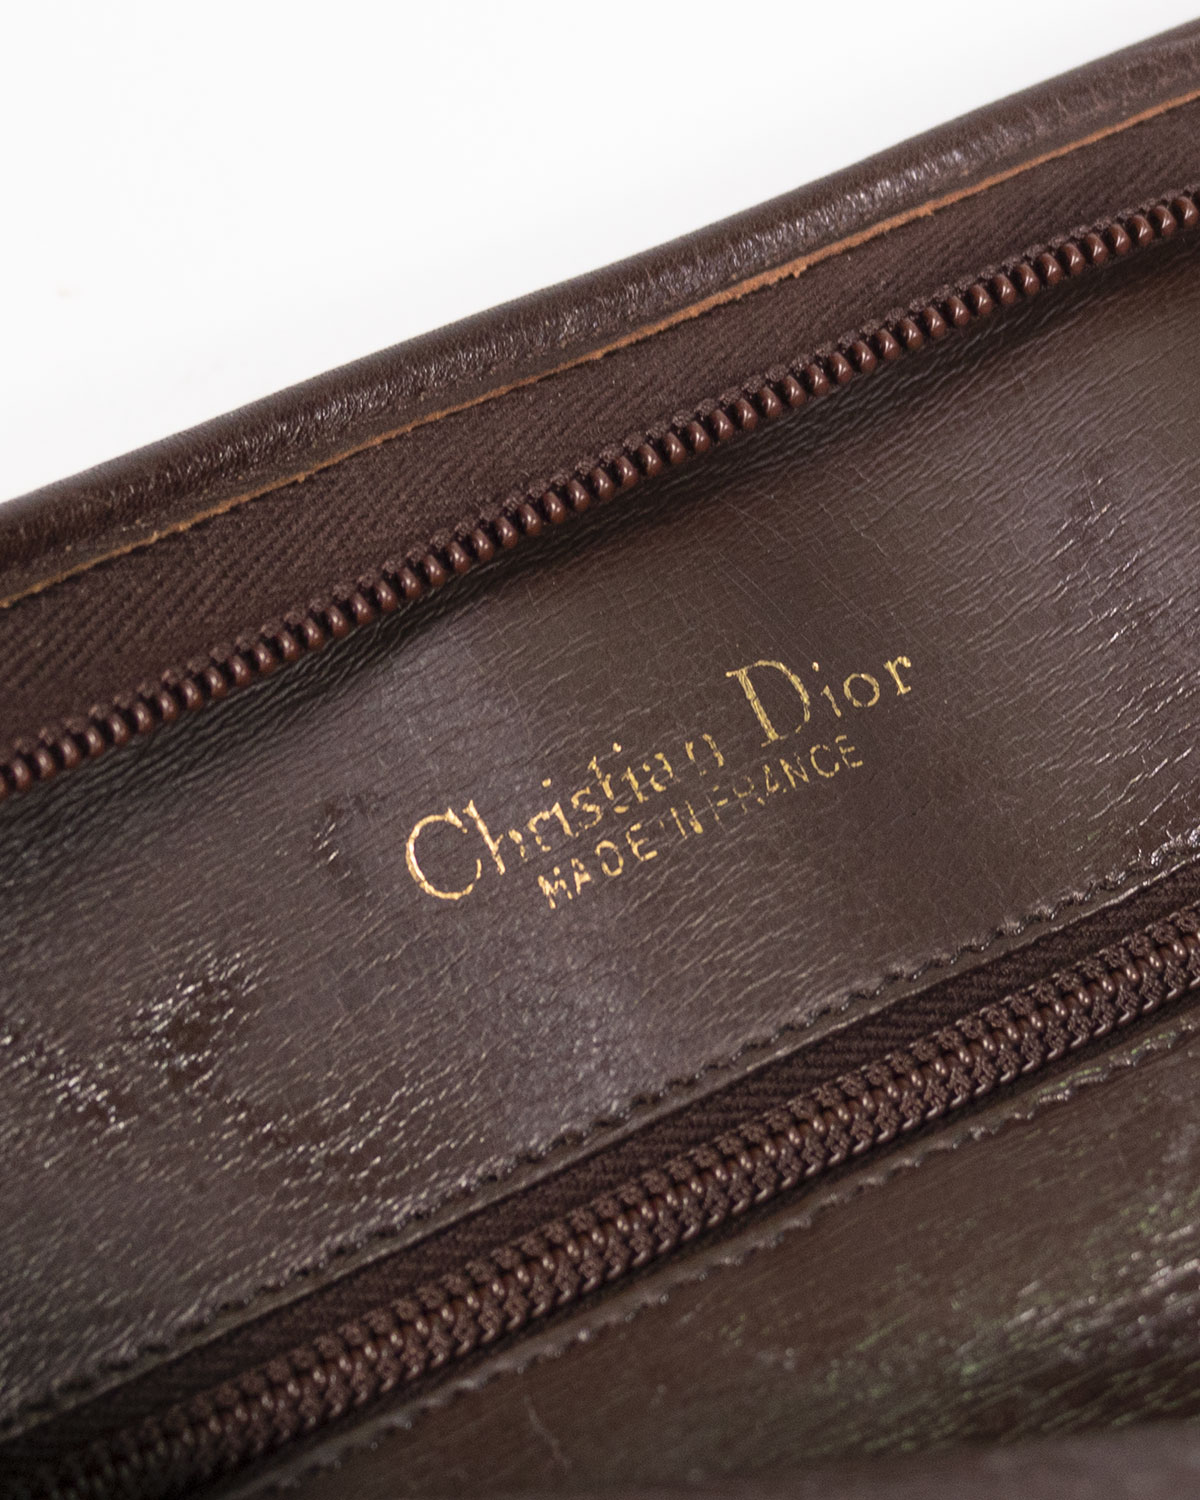 Christian Dior - Clutch in pelle anni '70